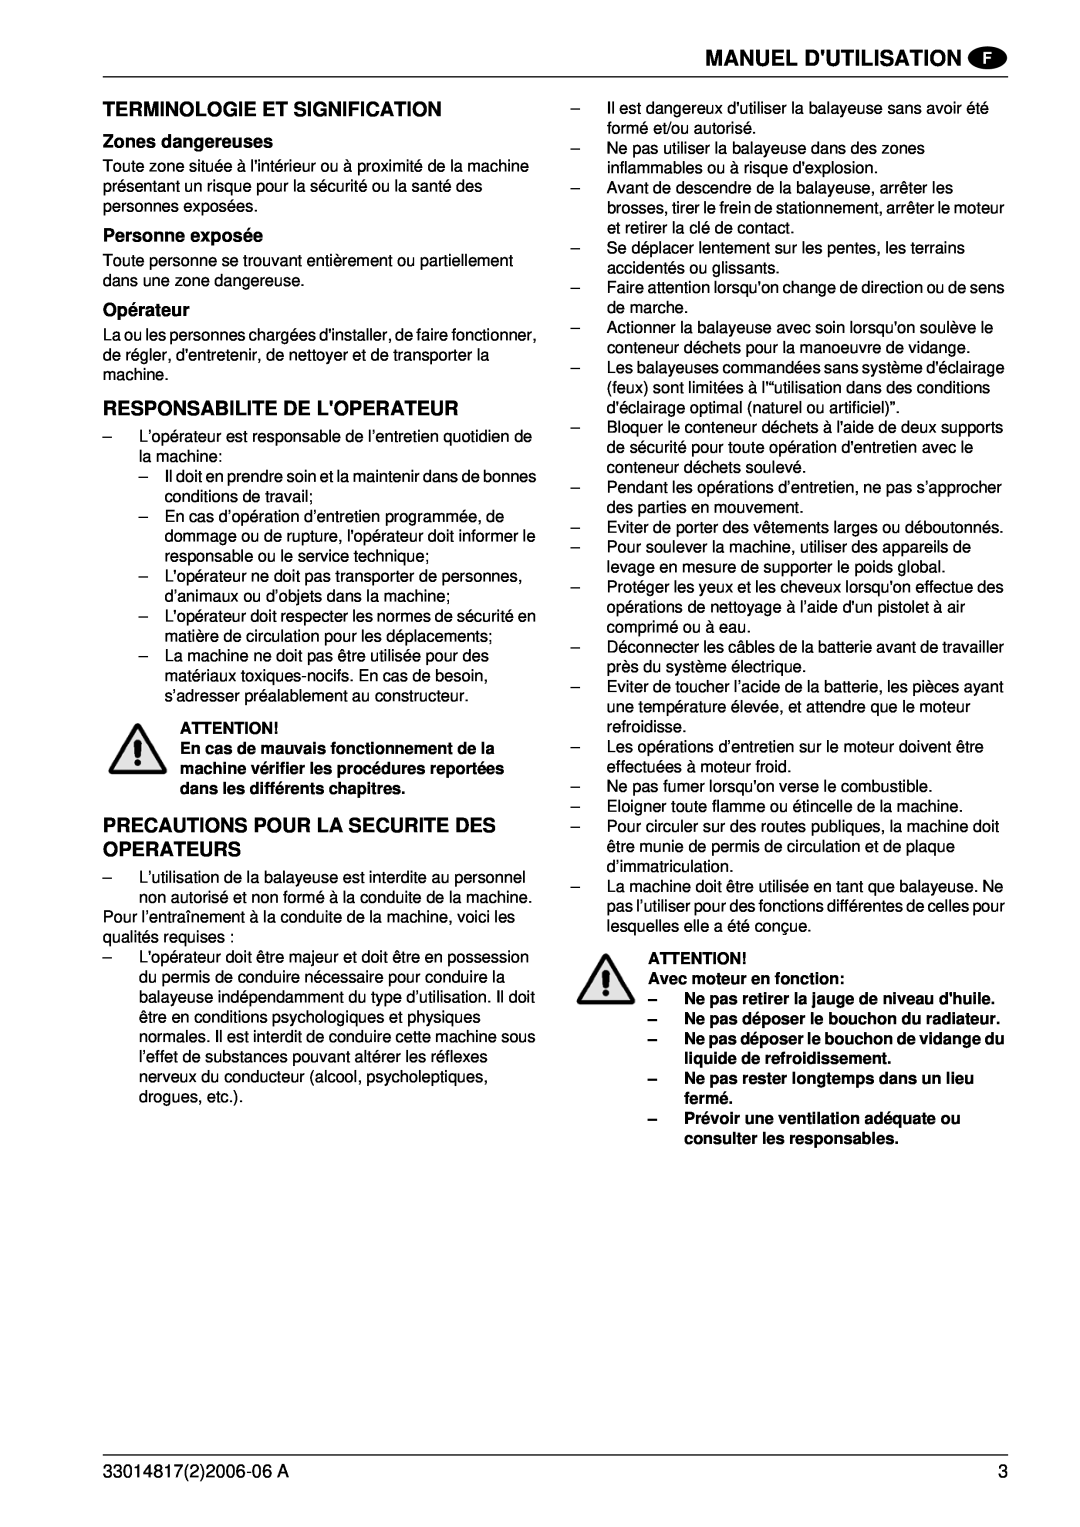 Nilfisk-ALTO SR1800C B-D Terminologie Et Signification, Responsabilite De Loperateur, Zones dangereuses, Personne exposée 